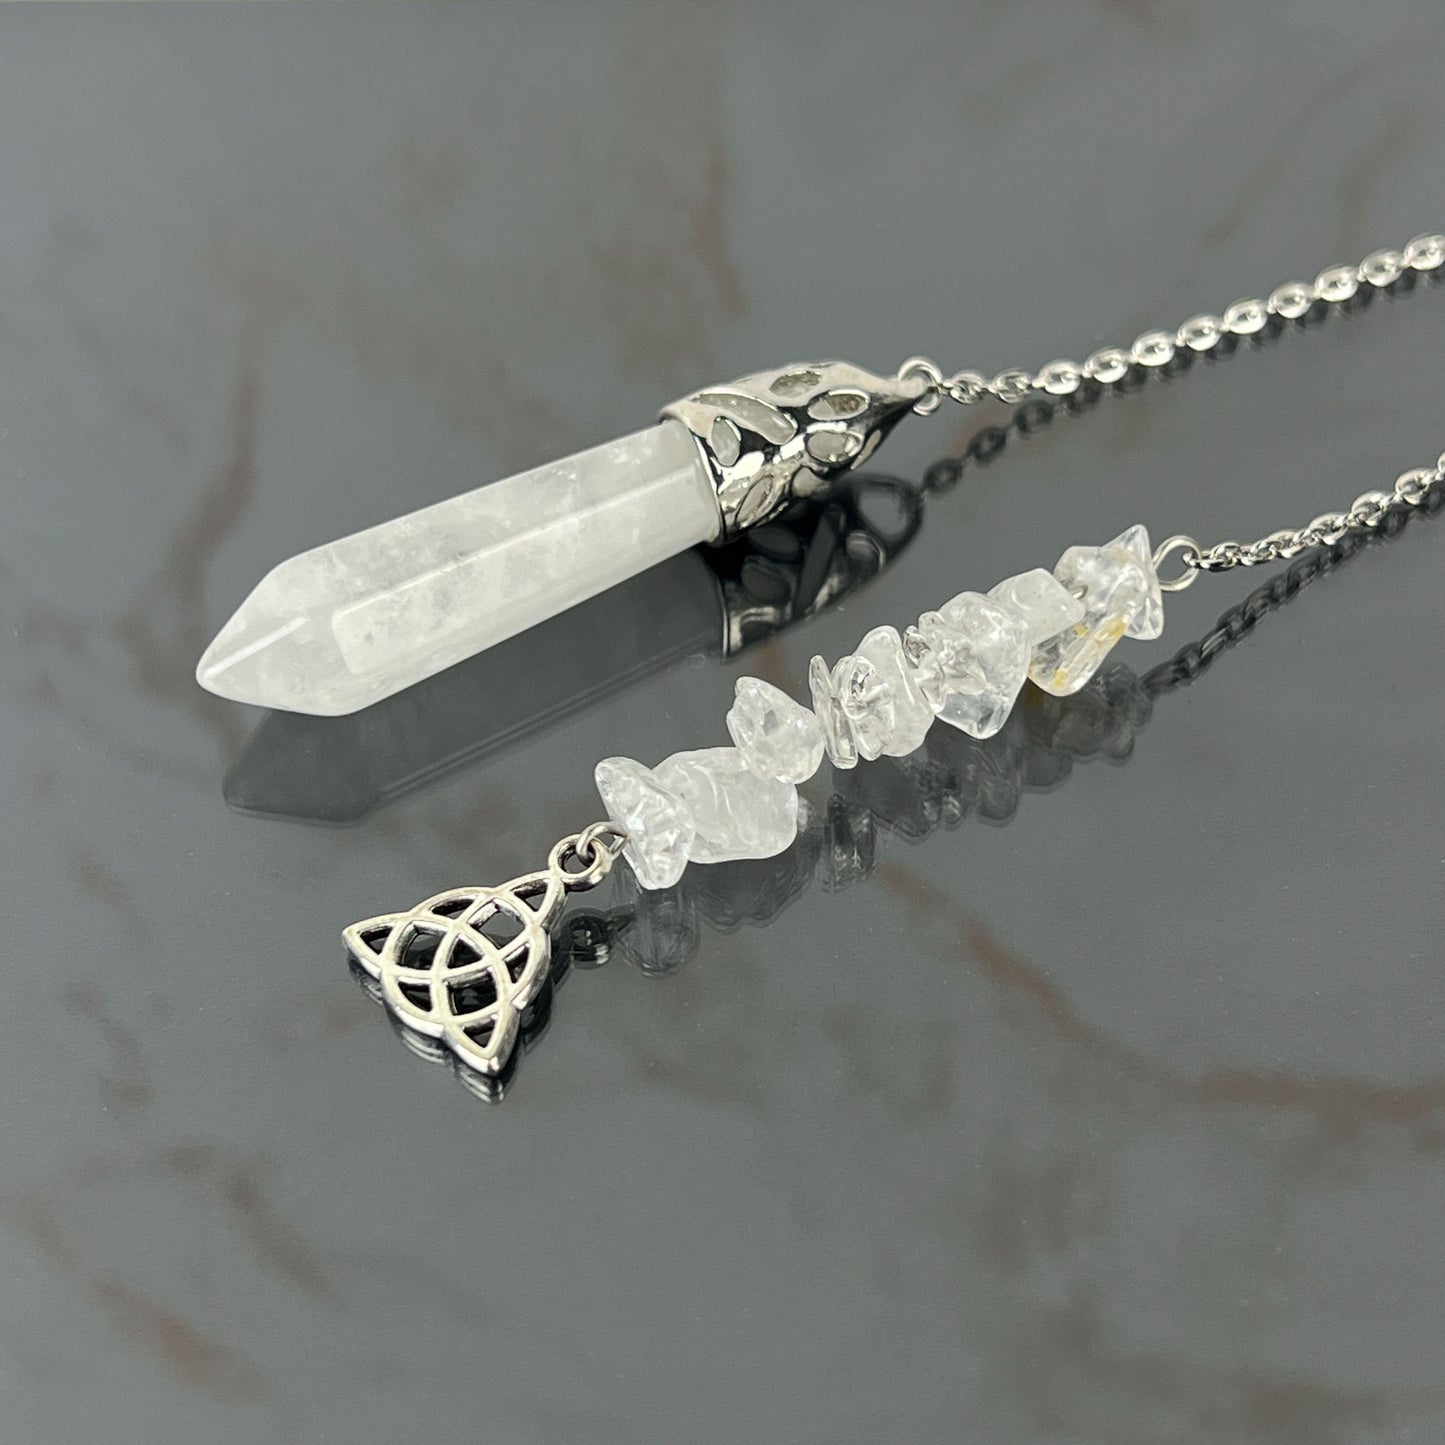 Clear quartz and triquetra pendulum